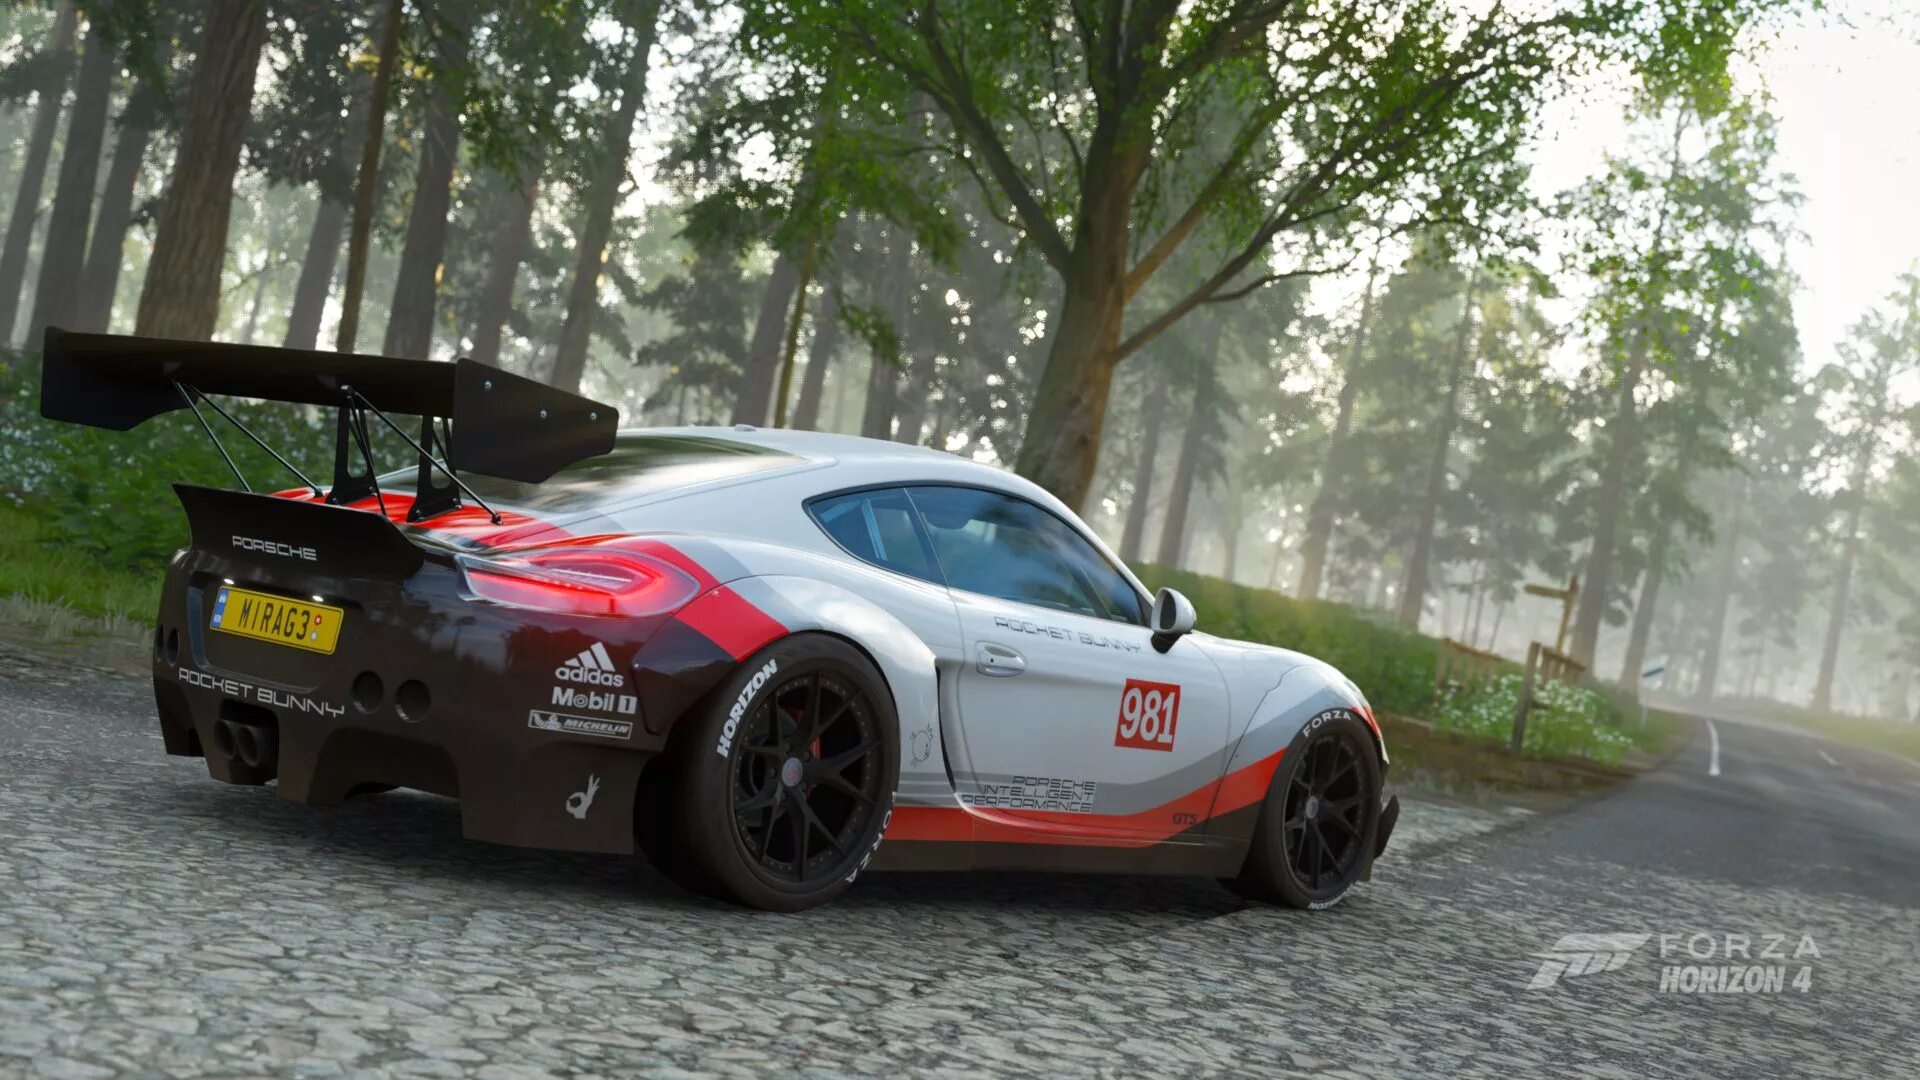 Forza horizon 4 моды. Forza Horizon 4 Porsche Cayman. Rocket Bunny Forza Horizon 4. Porsche 911 gt3 Forza Horizon 4. Rocket Bunny Forza Horizon 5.